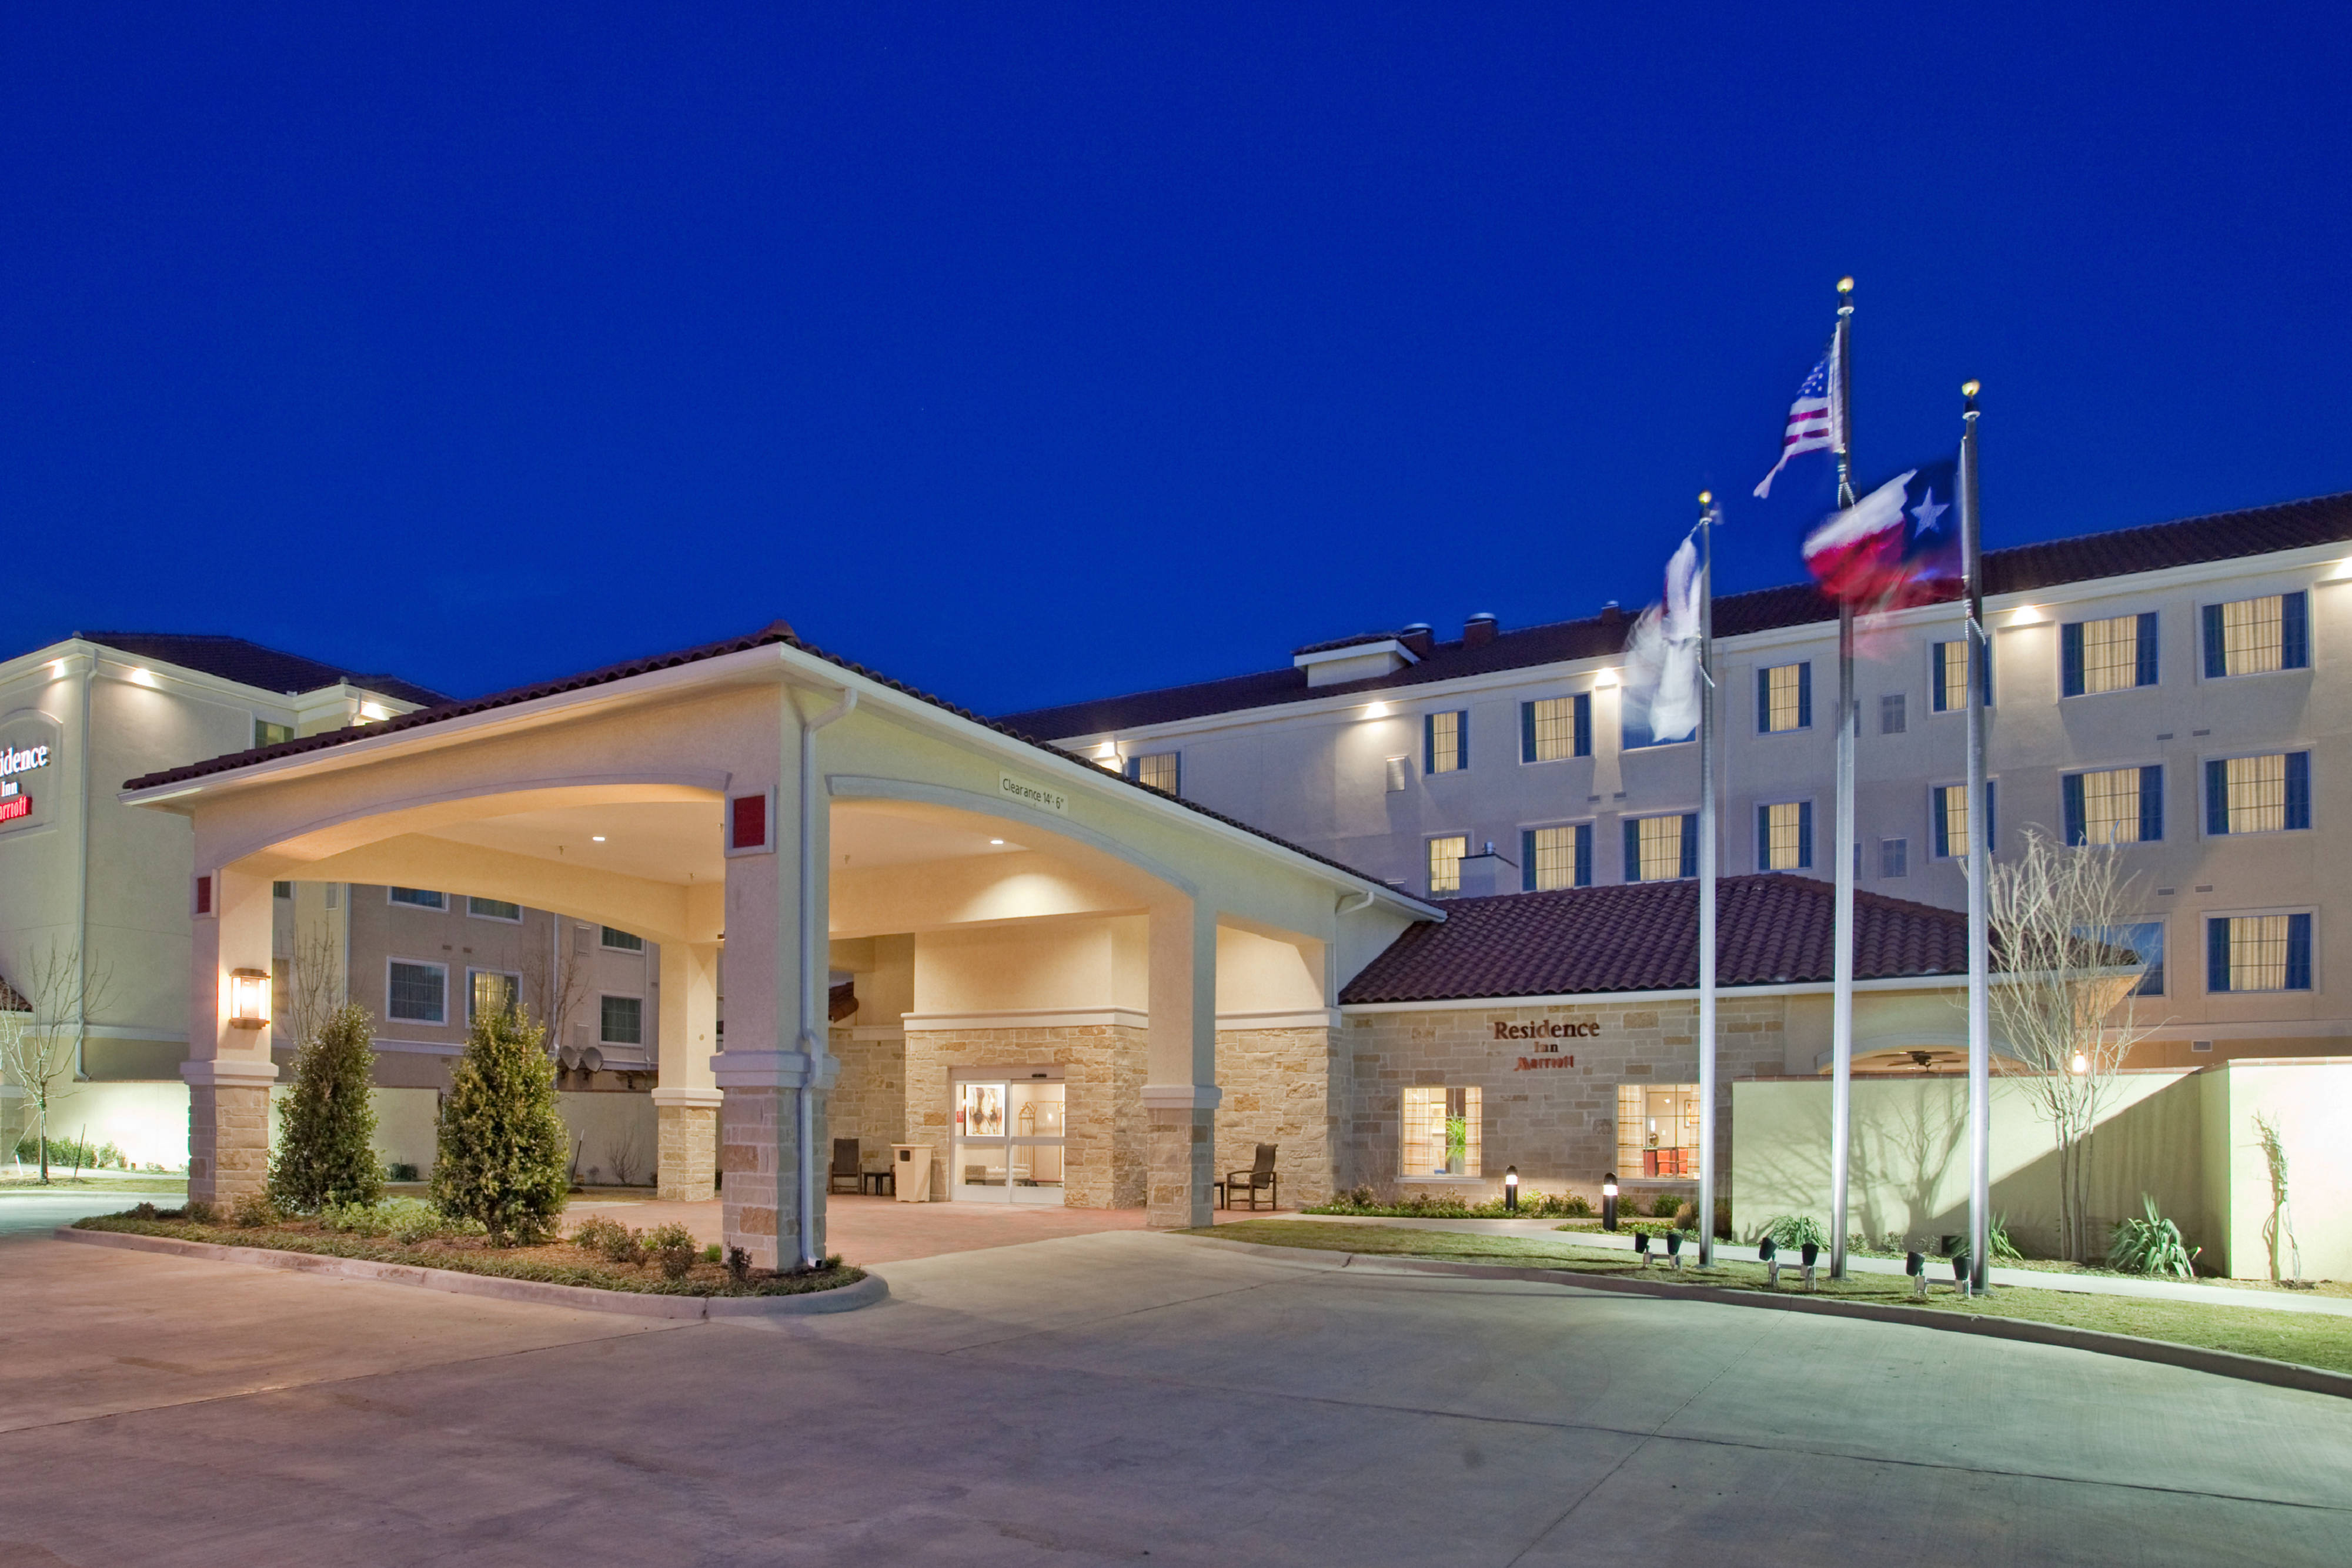 Photo of Residence Inn Odessa, Odessa, TX